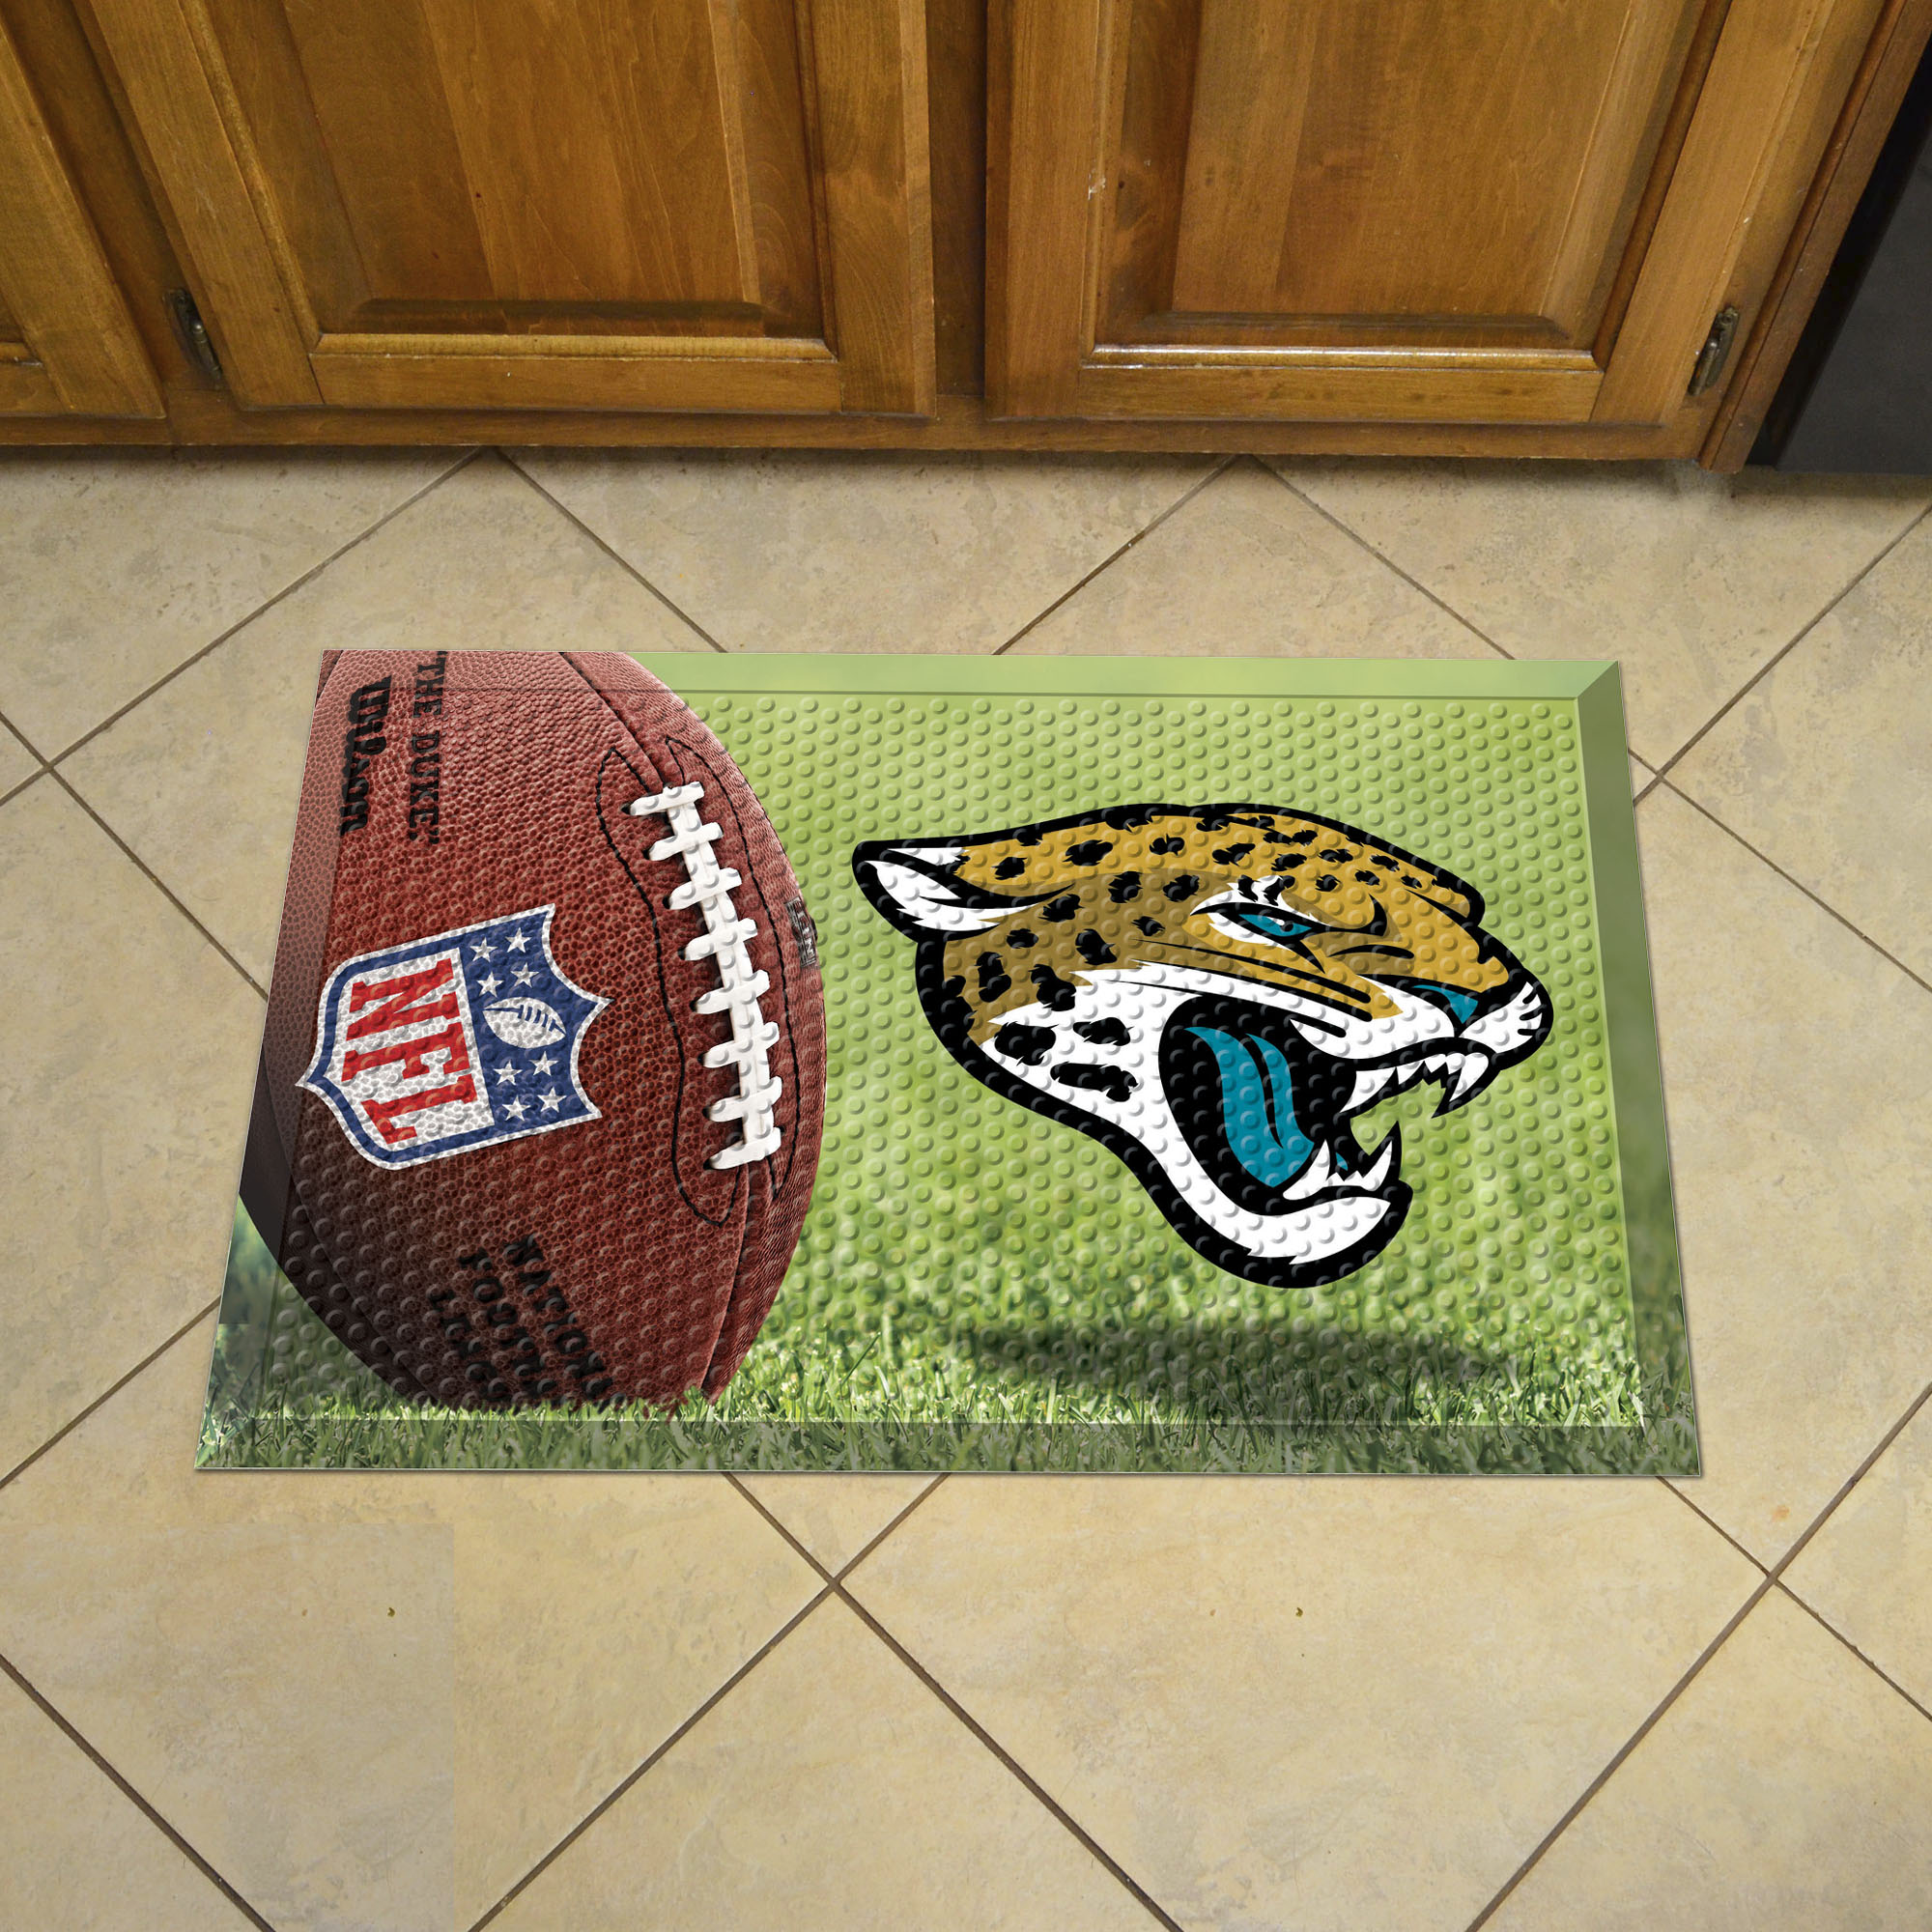 Jacksonville Jaguars Scrapper Doormat - 19 x 30 rubber (Field & Logo: Football Field)